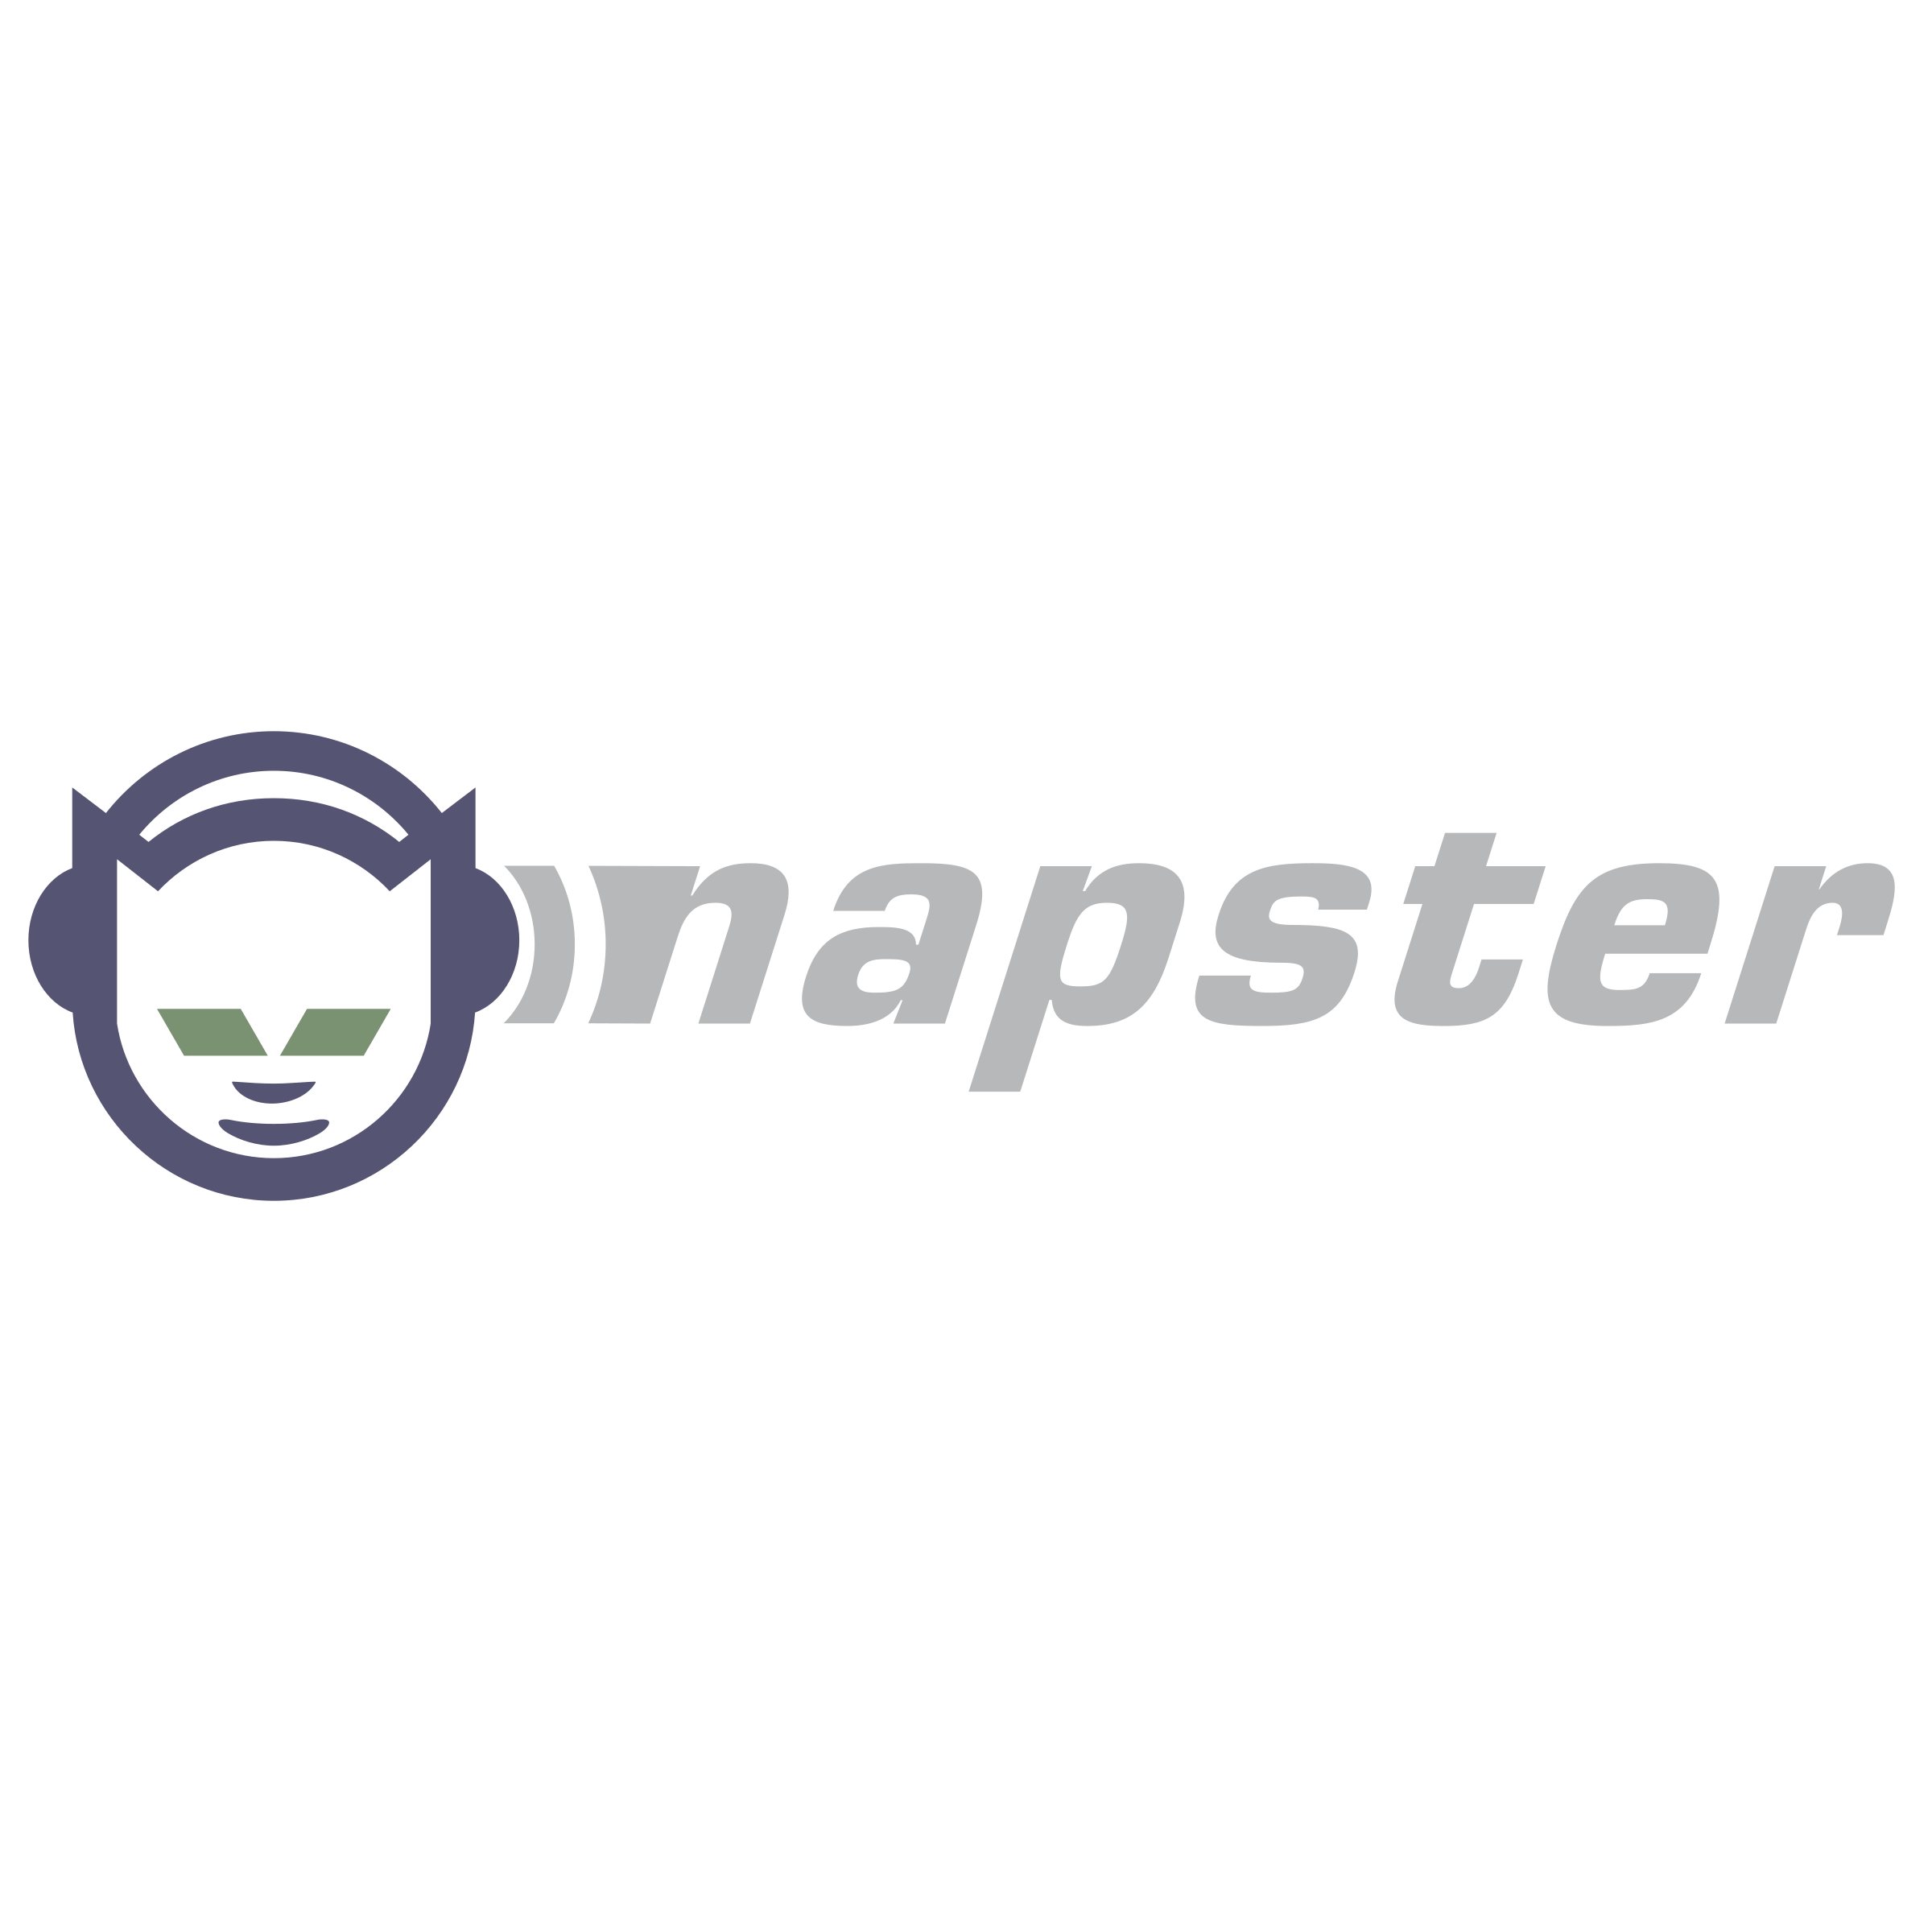 Napster Logo - Napster Logo PNG Transparent & SVG Vector